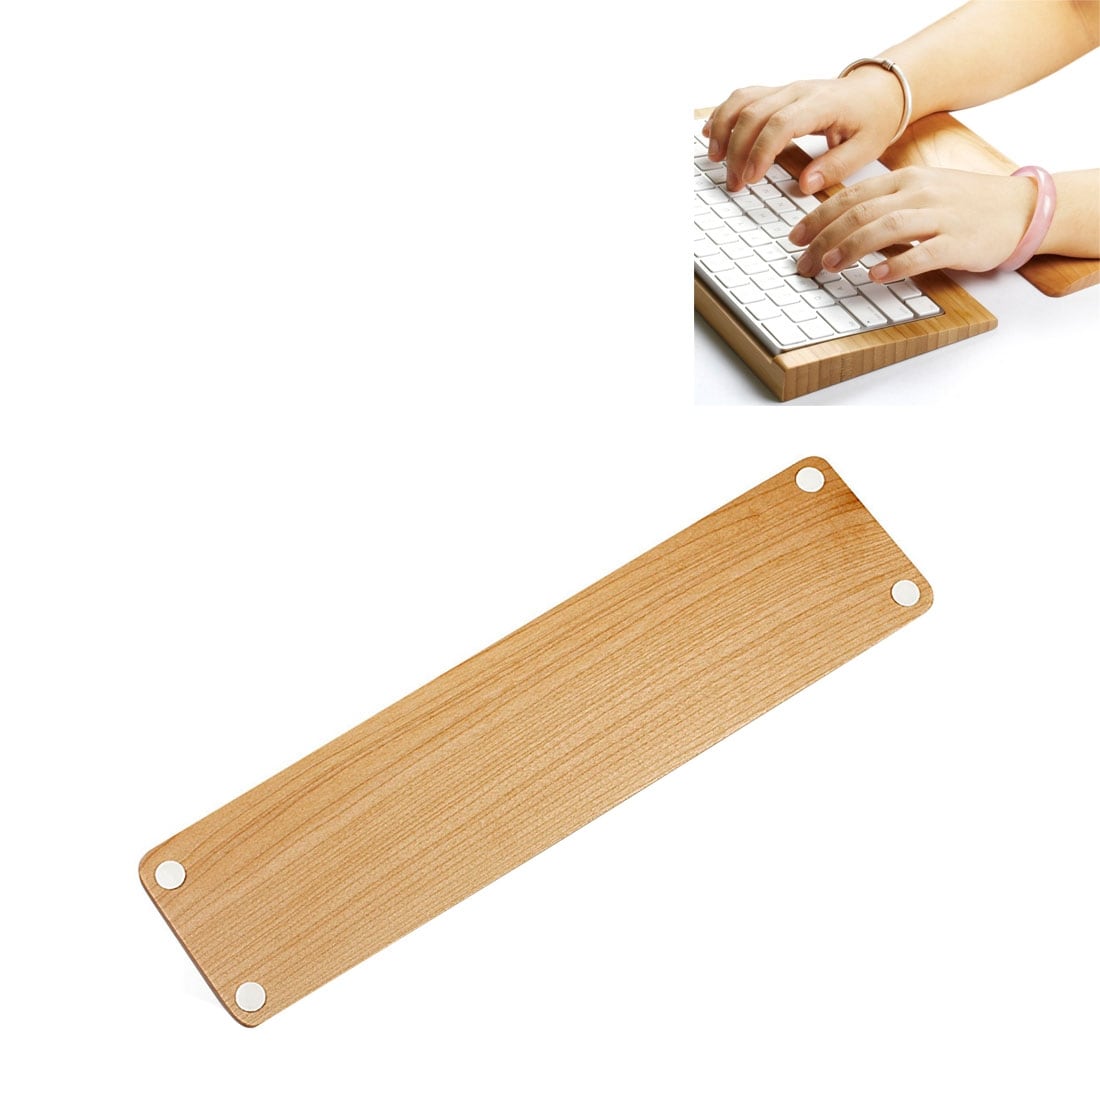 Håndleddstøtte tangentbord i tre design